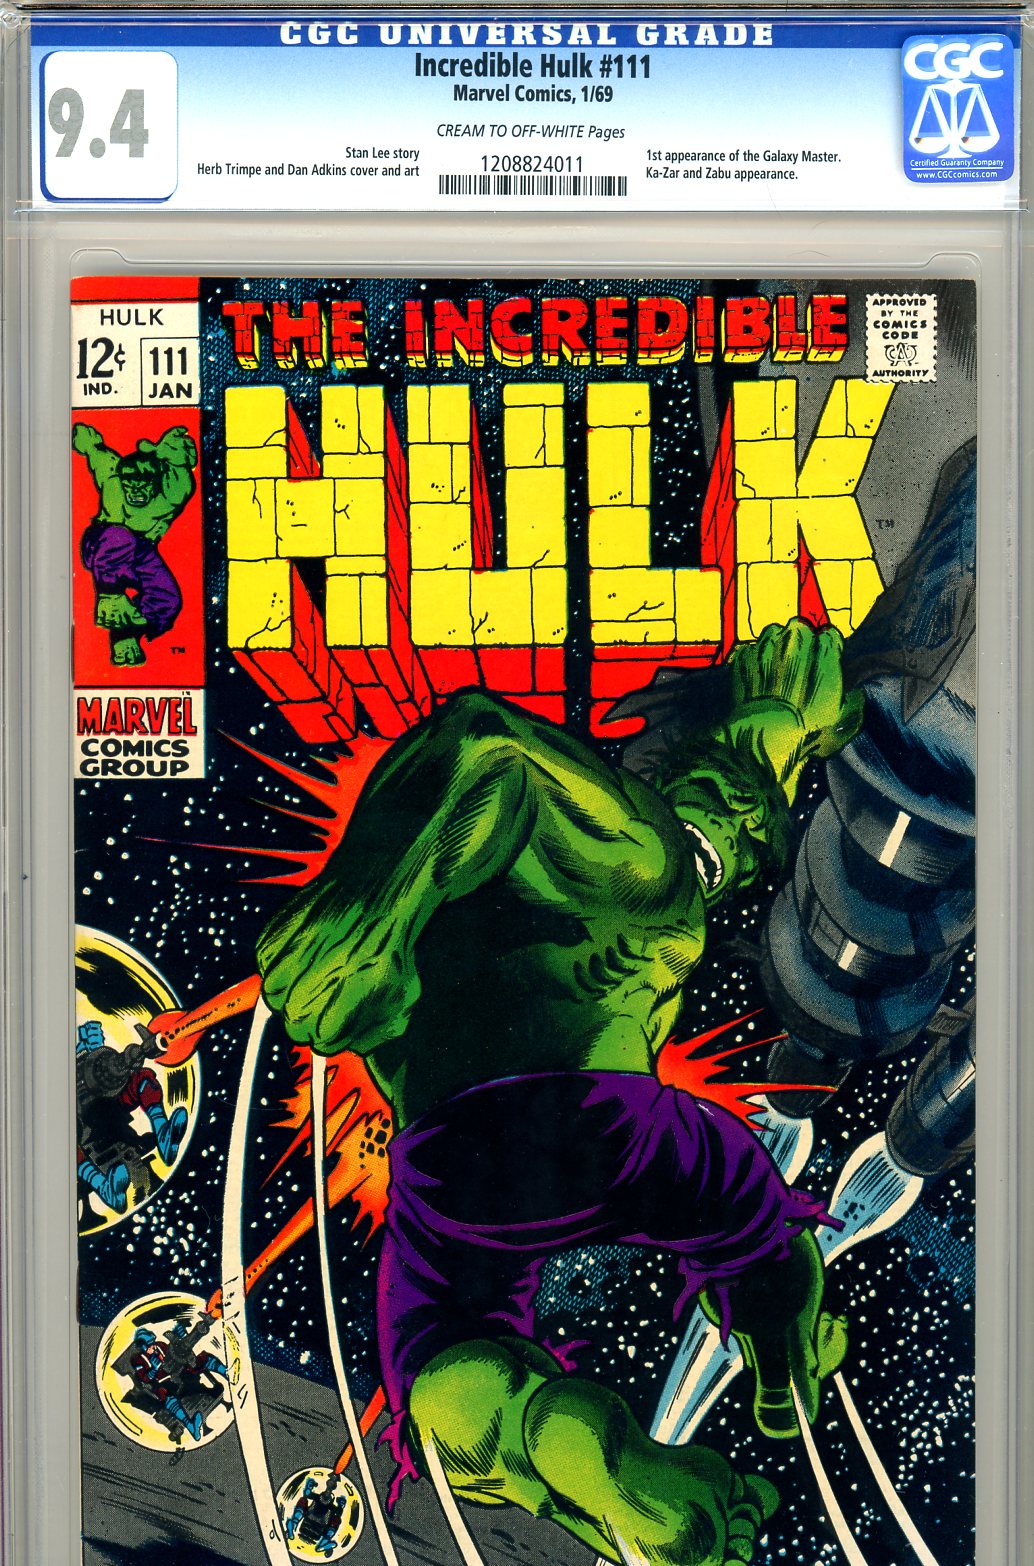 Incredible Hulk #111 CGC 9.4 cr/ow